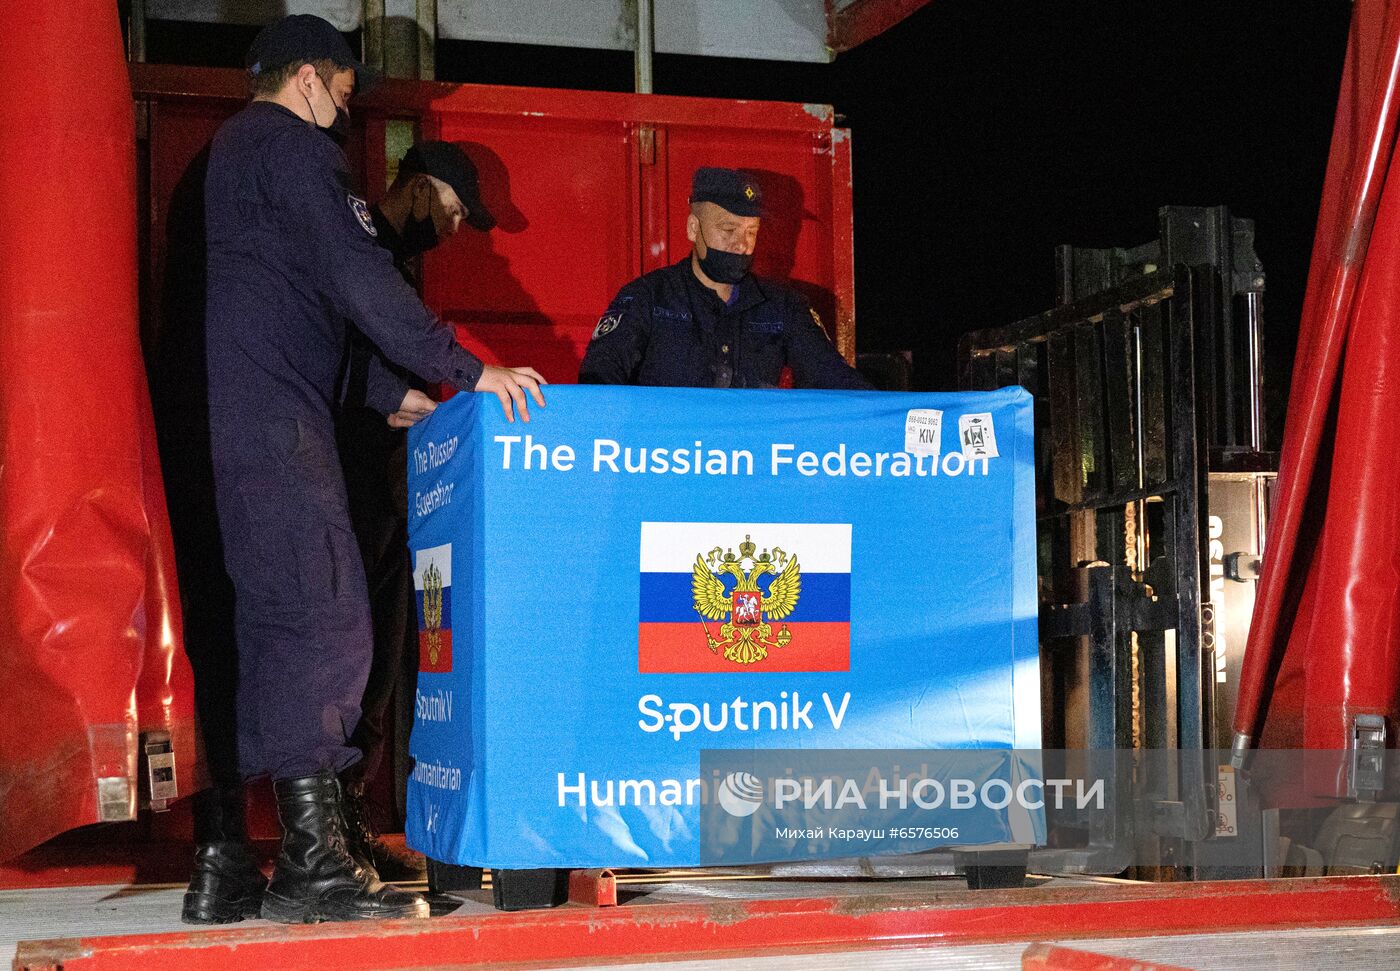 Новая партия российской вакцины Sputnik V доставлена в Молдавию